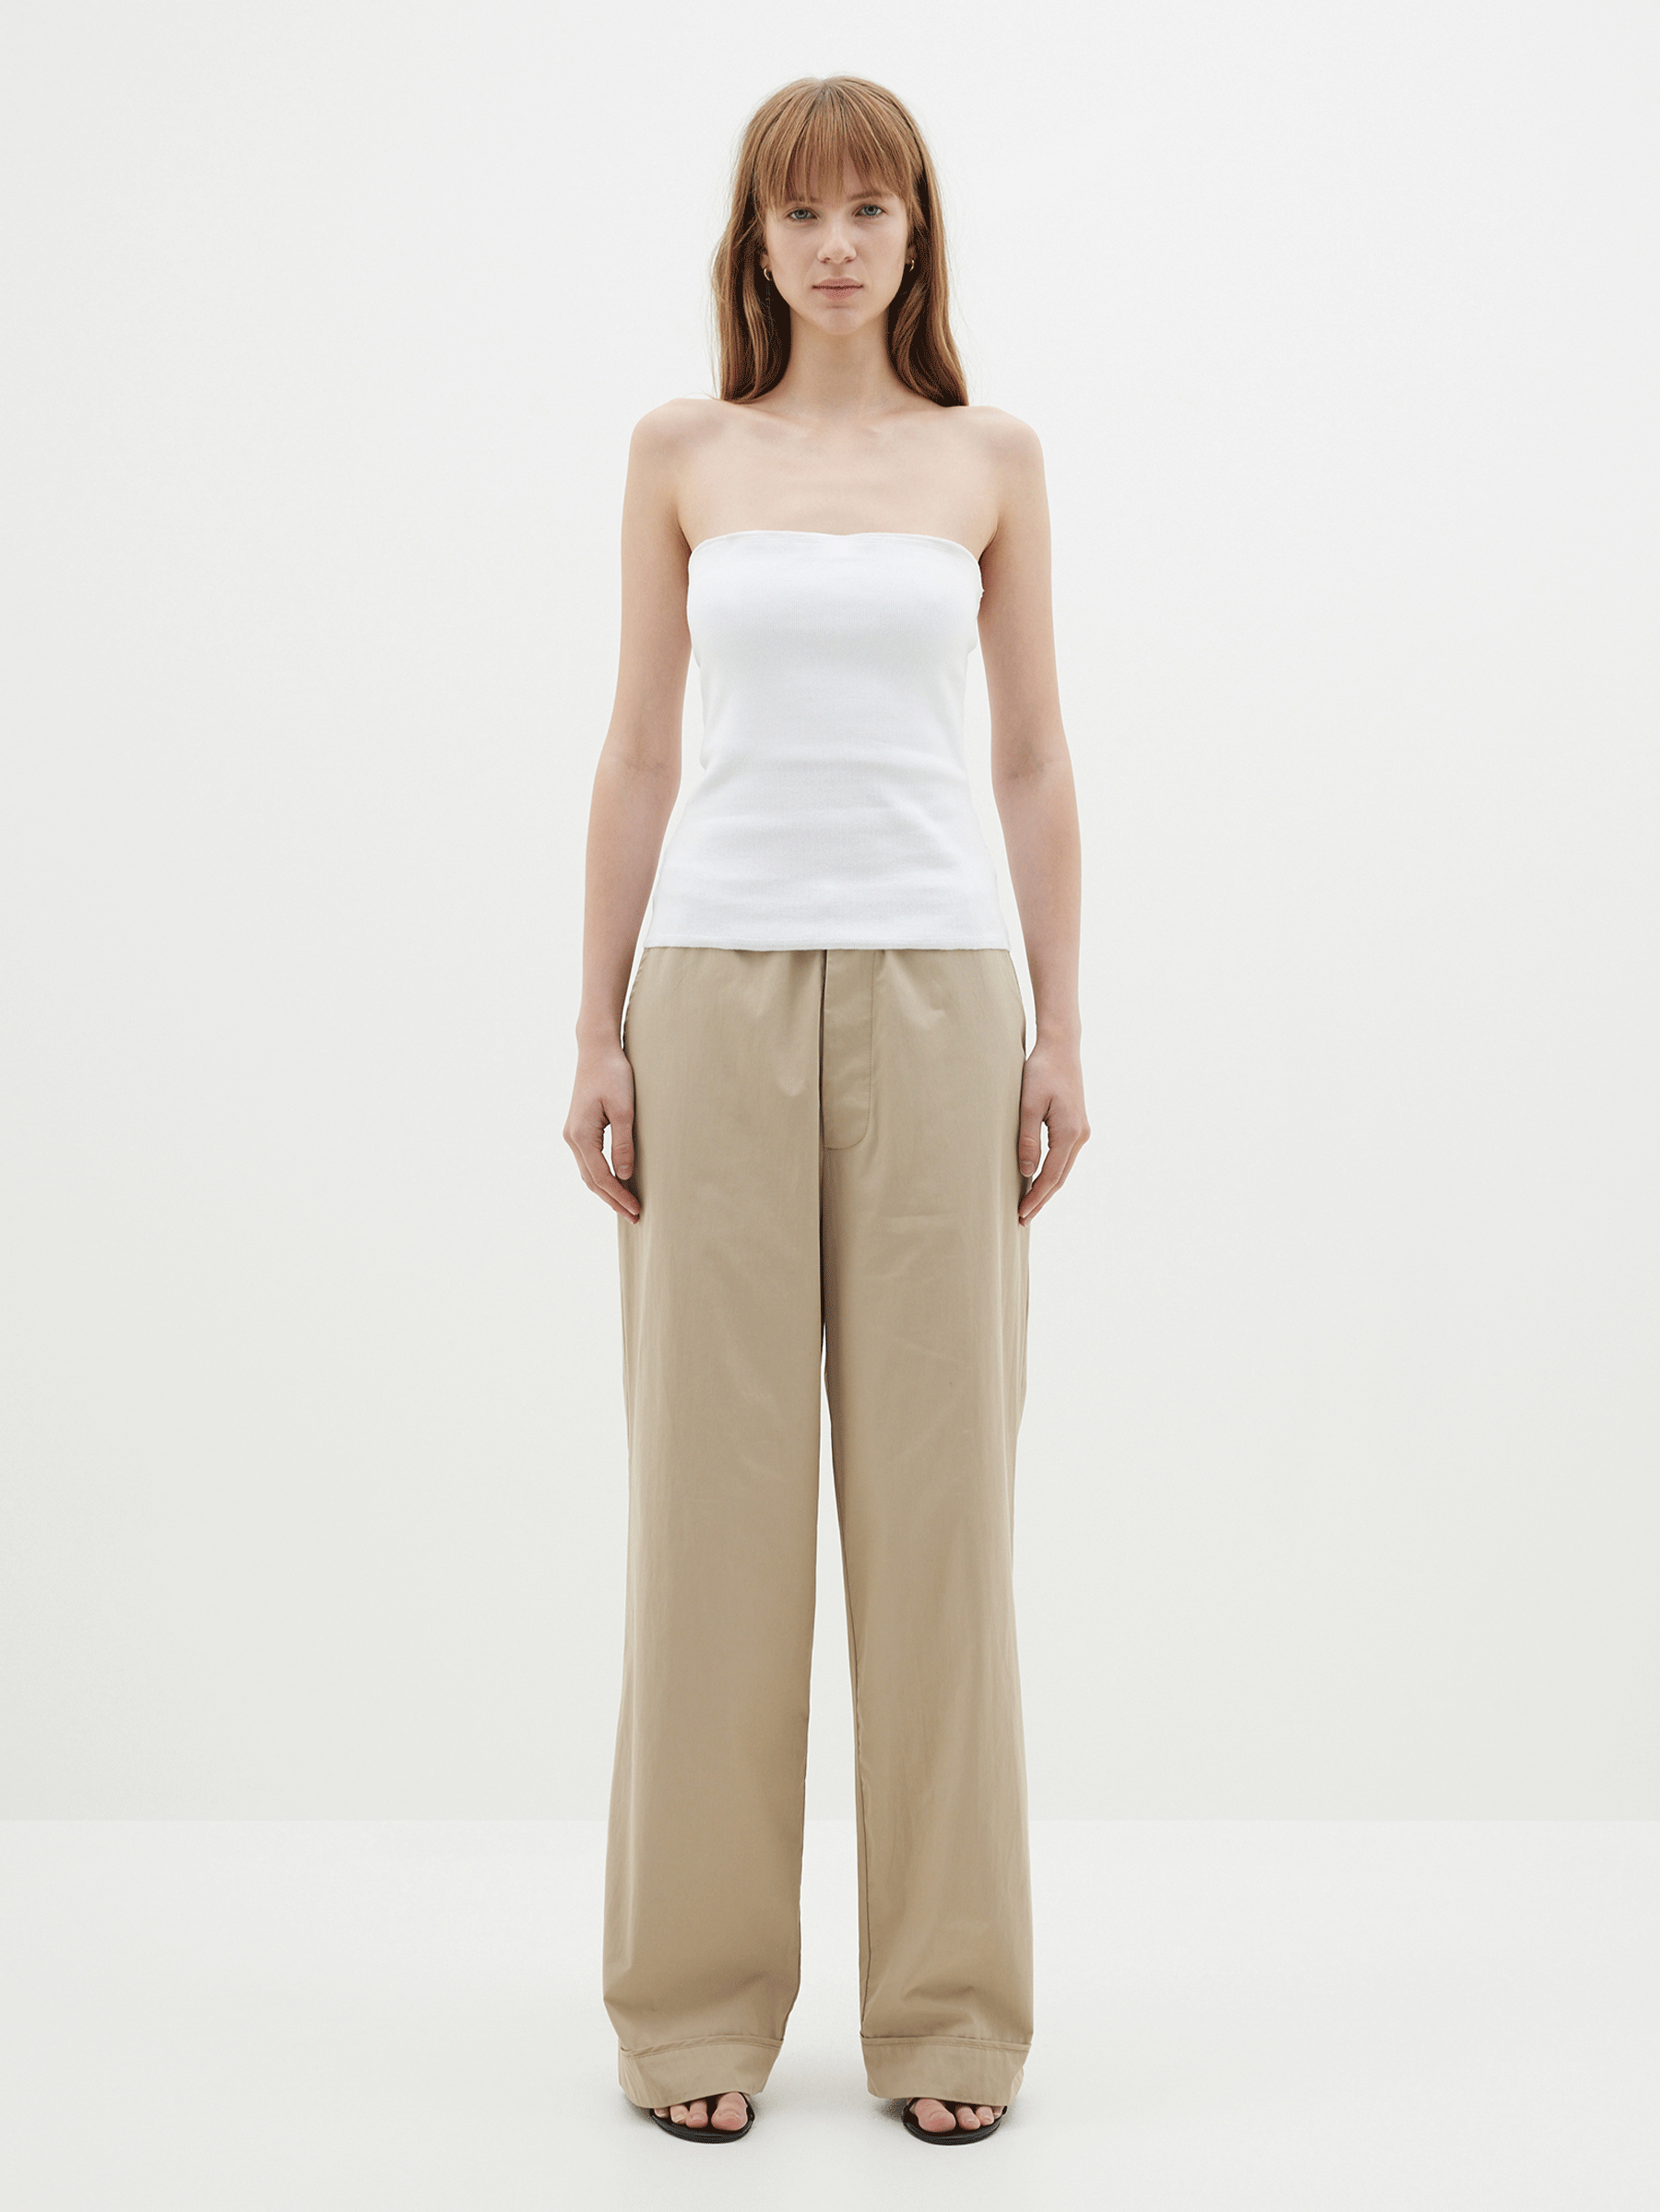 Women's Summer Cotton Linen Elastic Waist Pants | Cotton linen pants, Linen  pants, Summer cotton